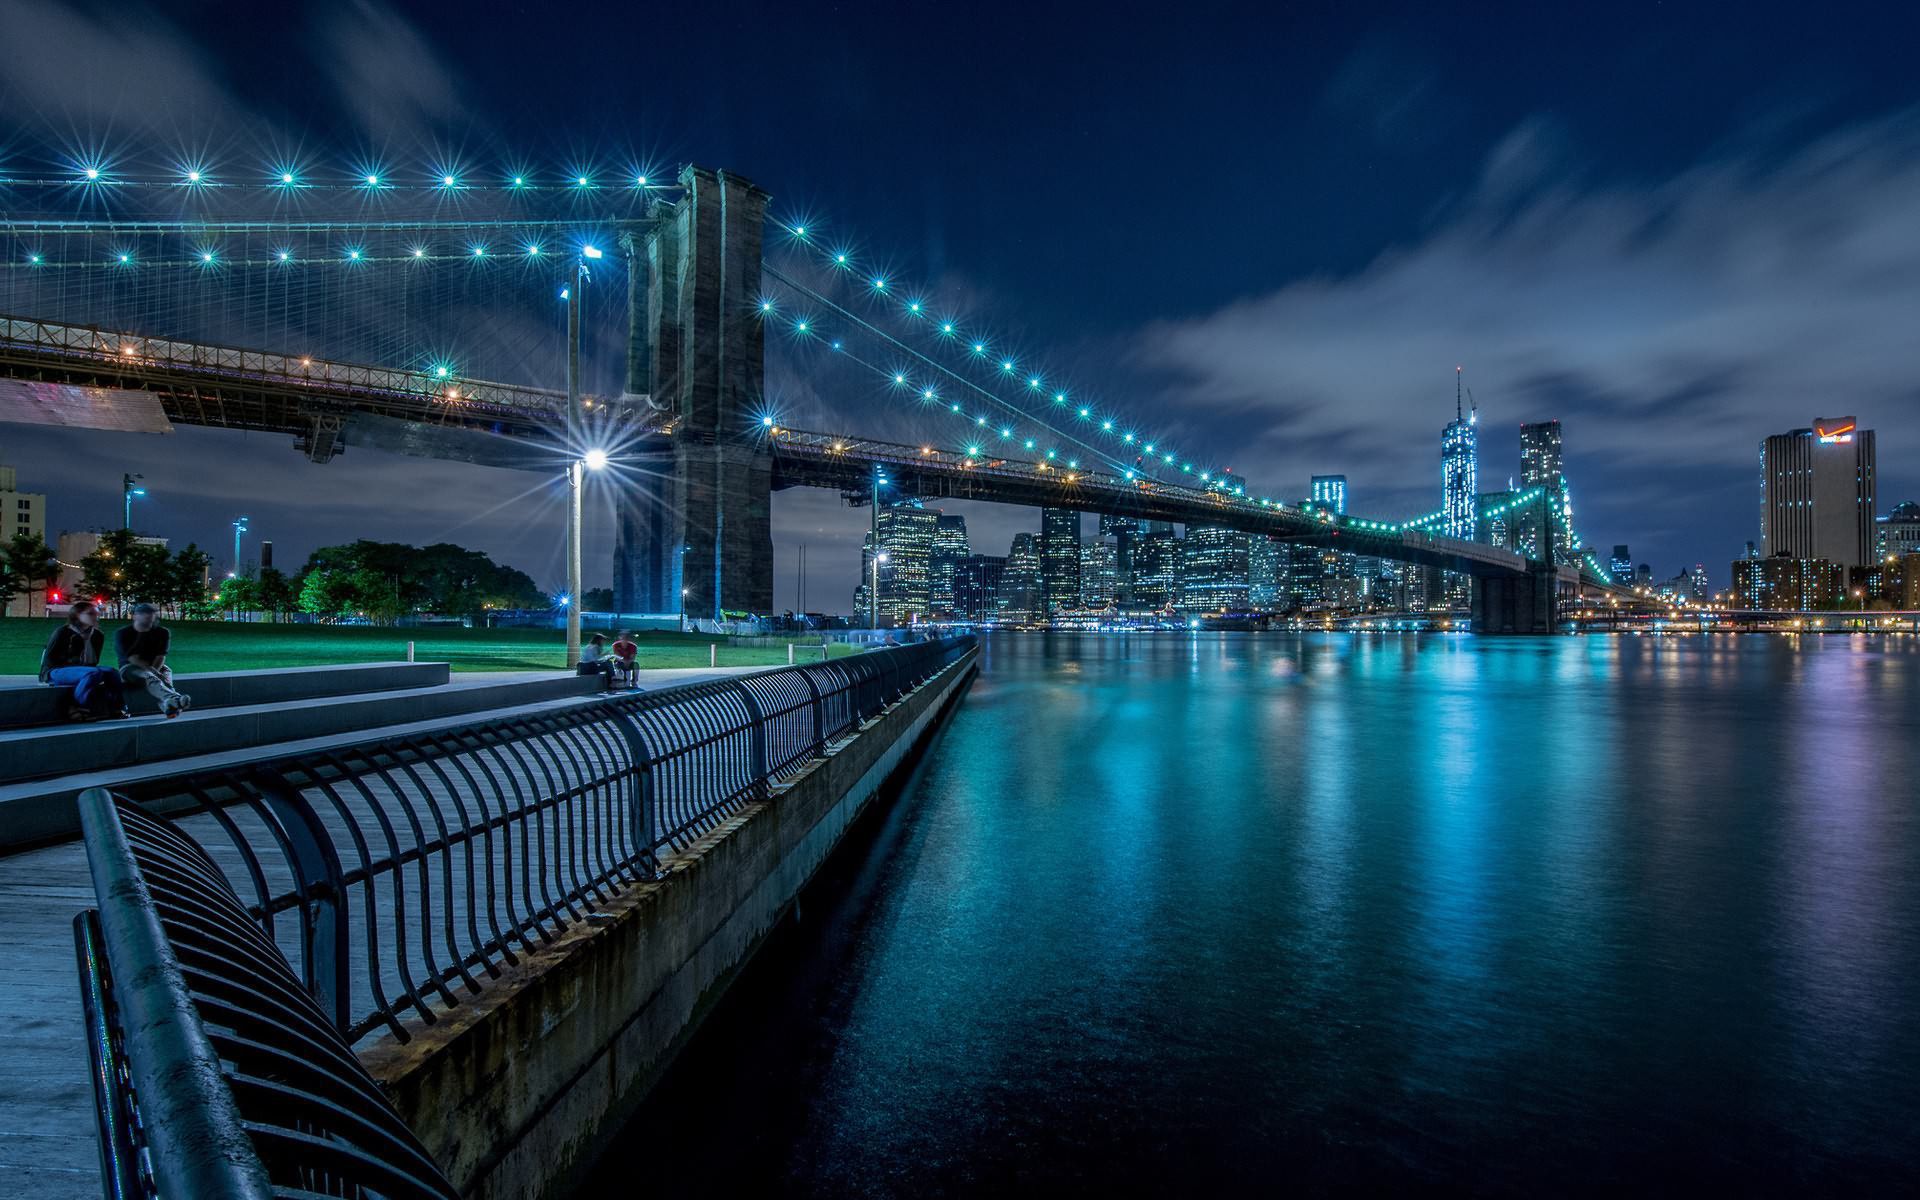 ブルックリン橋の壁紙,首都圏,ブリッジ,都市の景観,夜,青い